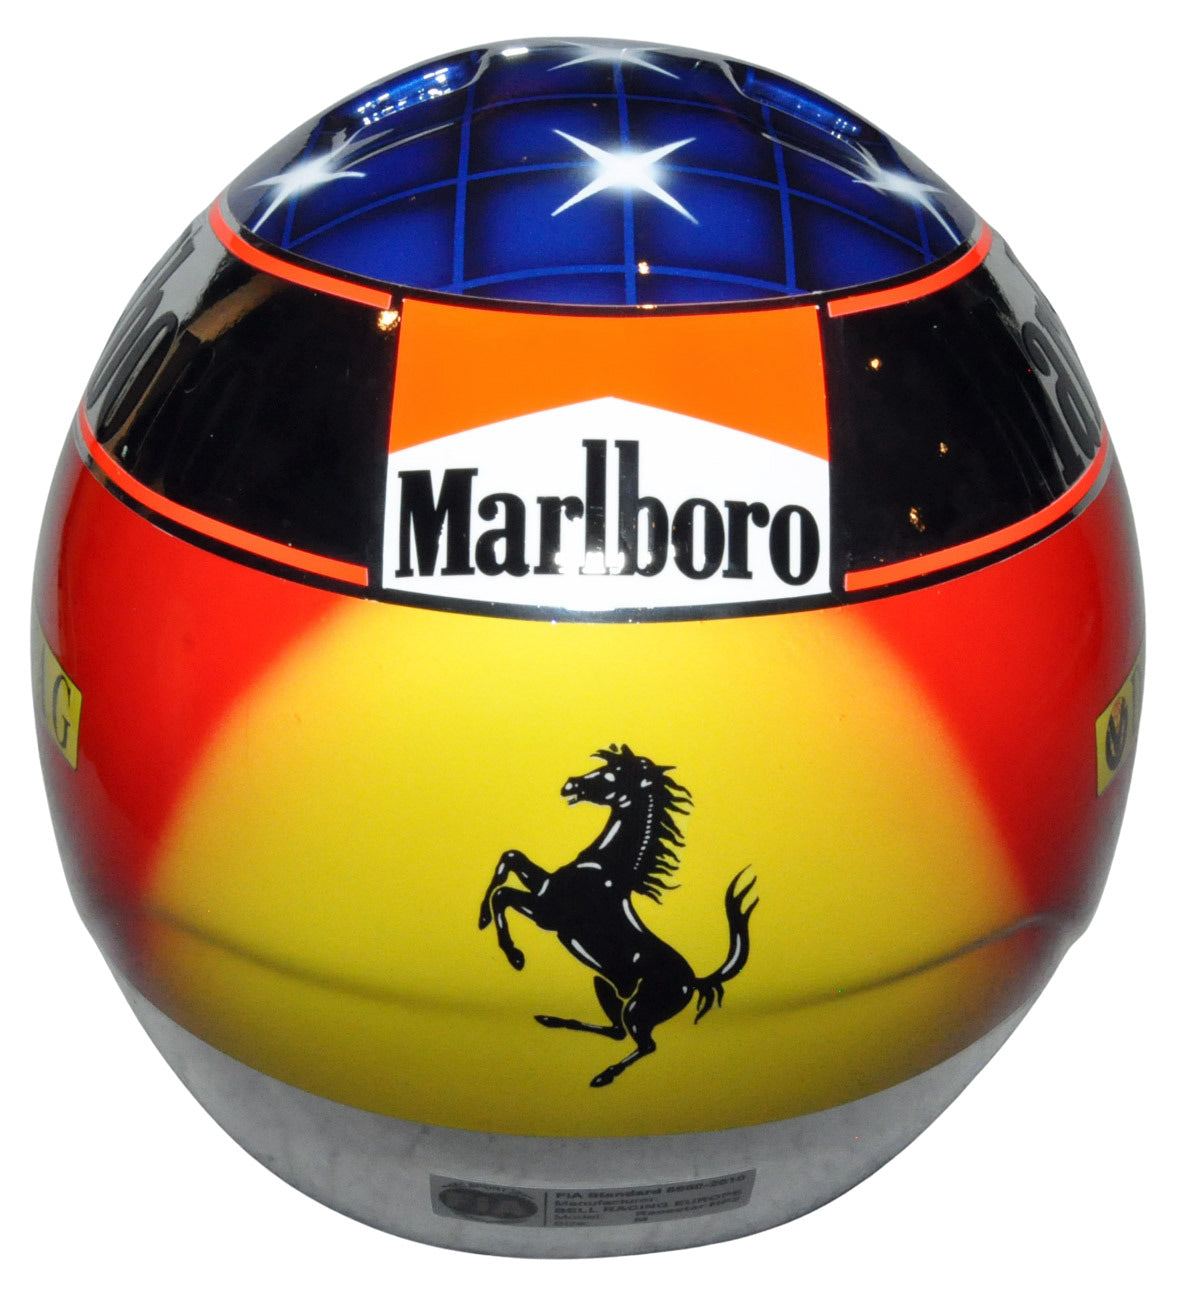 Michael Schumacher Signed Ferrari 1998 Japan F1 Grand Prix Full Scale Replica Helmet